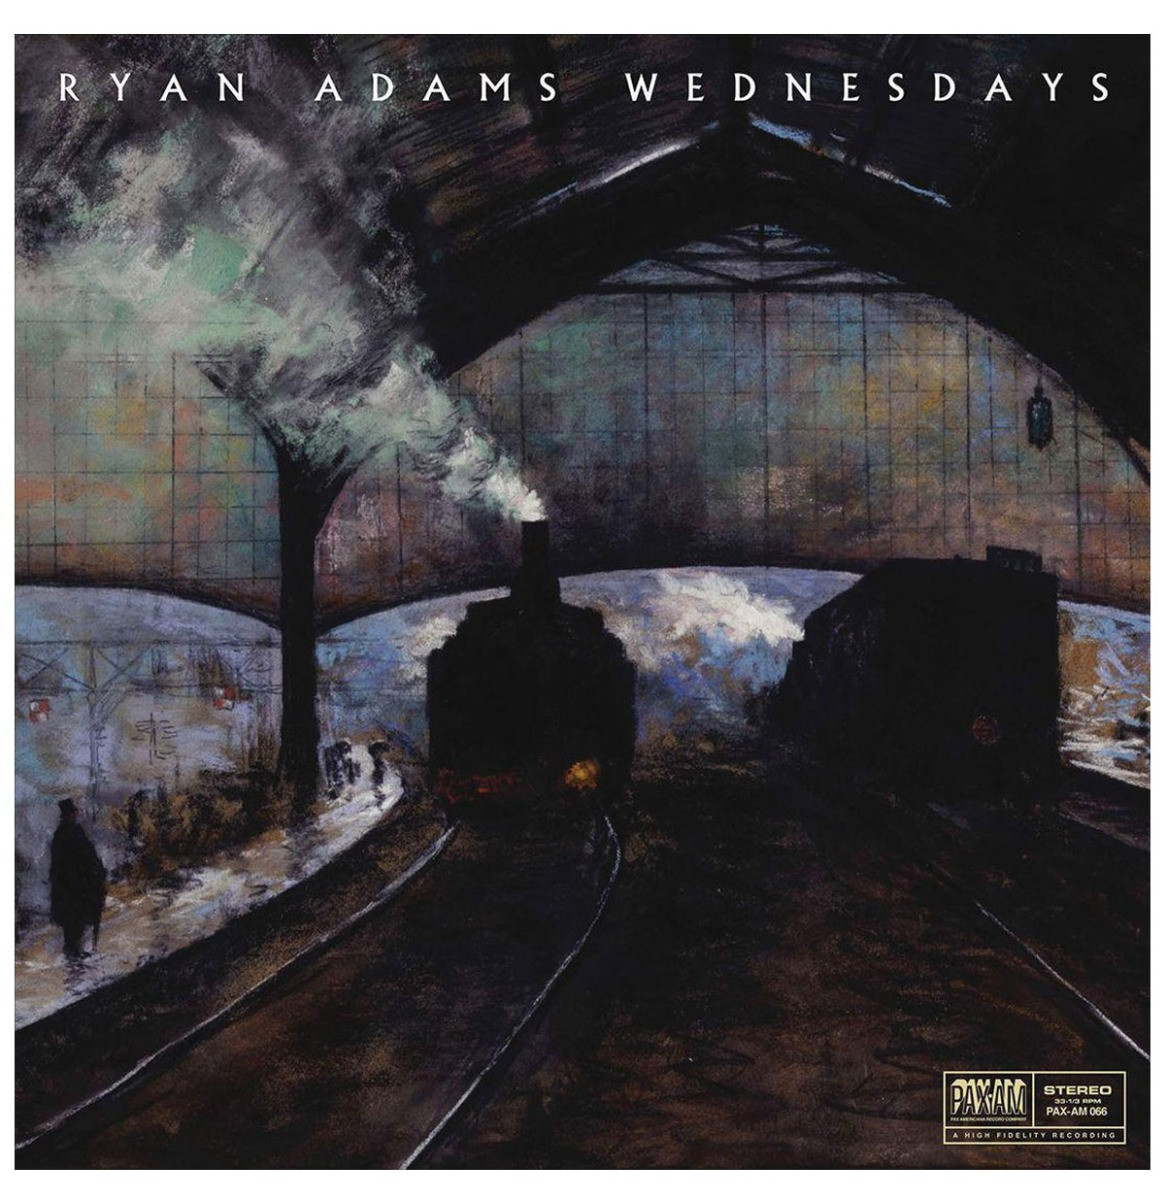 Ryan Adams - Wednesdays LP + Bonus 7" Single